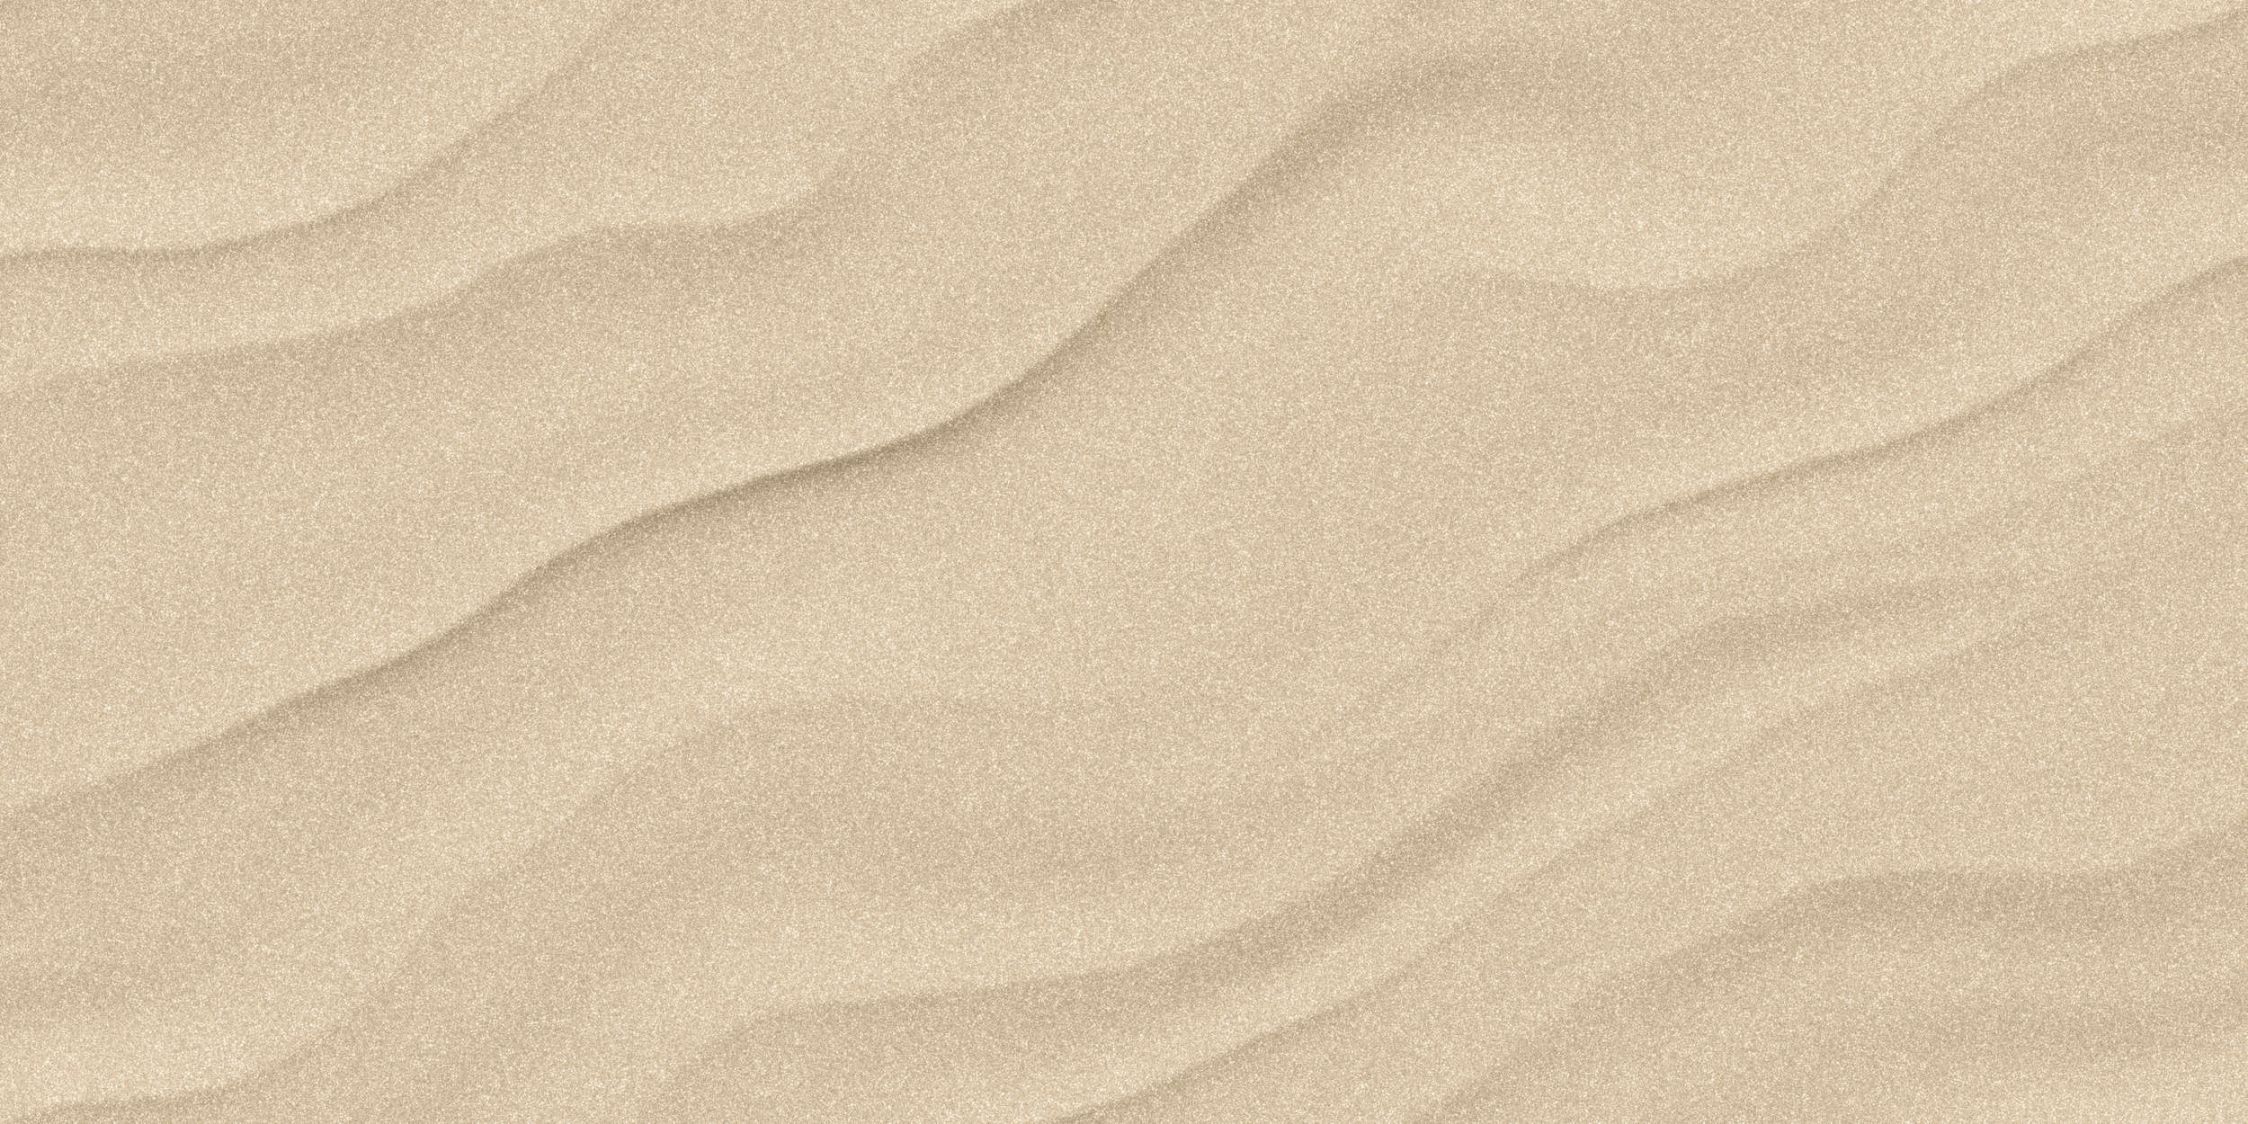             Fotomurali »sahara« - Pavimento sabbioso del deserto con aspetto di carta fatta a mano - Materiali non tessuto opaco e liscio
        